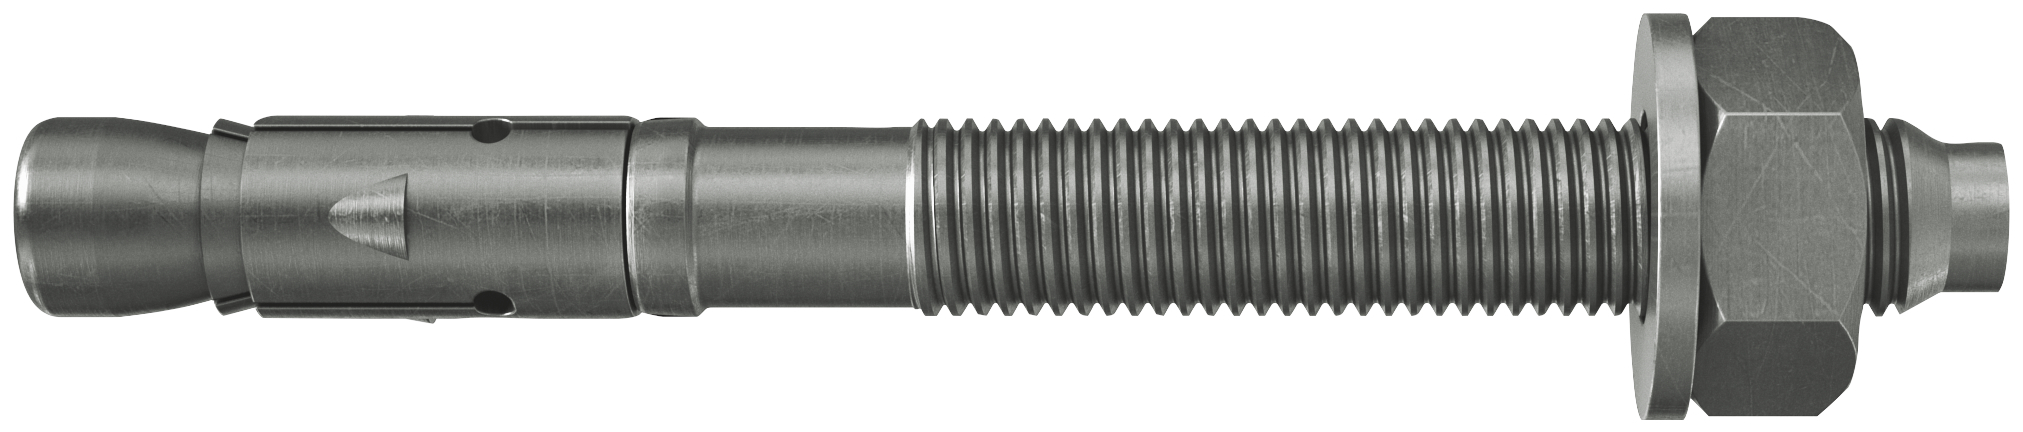 fischer Tassello acciaio FAZ II 12/50 A4 (20 Pz.) L'ancorante ad espansione ad alte prestazioni per carichi statici su calcestruzzo fessurato e per applicazioni sismiche. Versione in acciaio inossidabile con classe di resistenza alla corrosione CRC III..